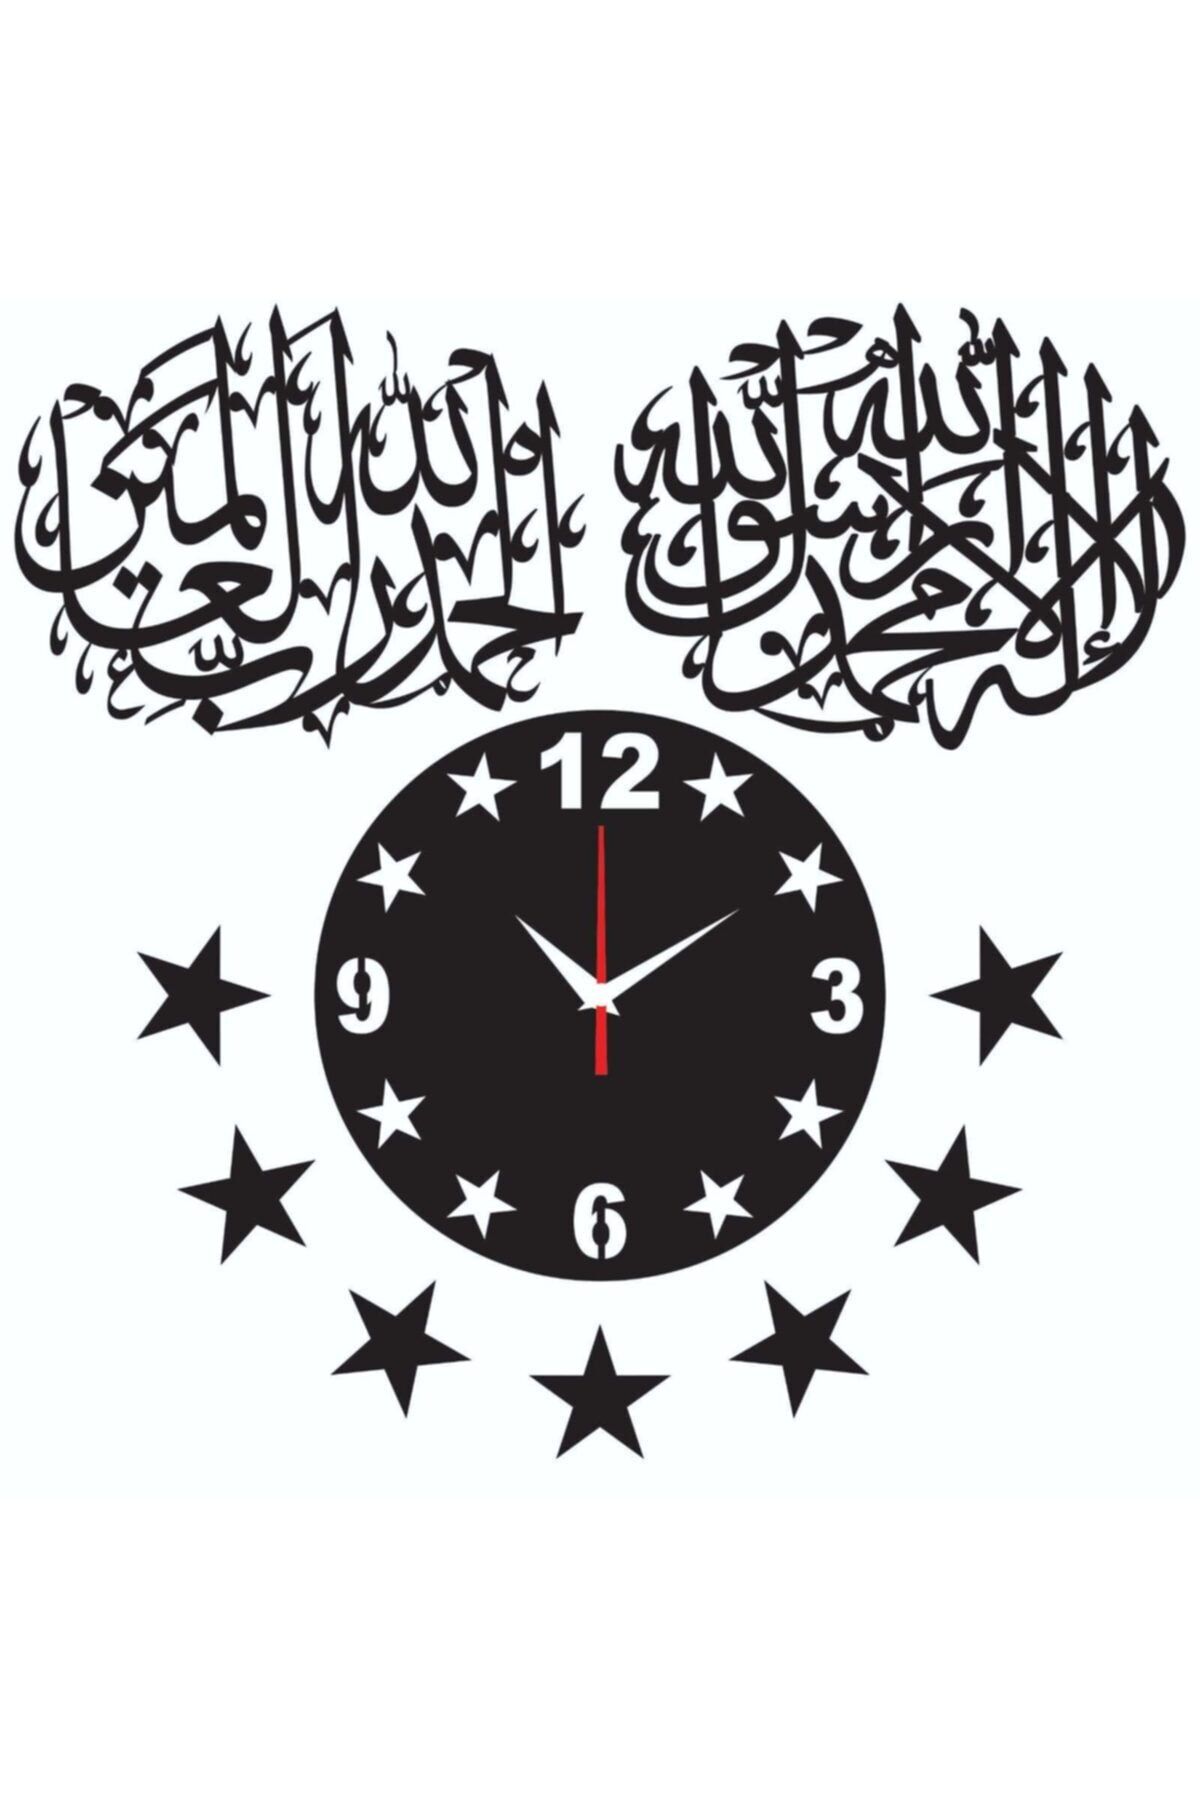 AHŞAP ATÖLYE Büyük Boy Islami Ahşap Duvar Saati + Hediye